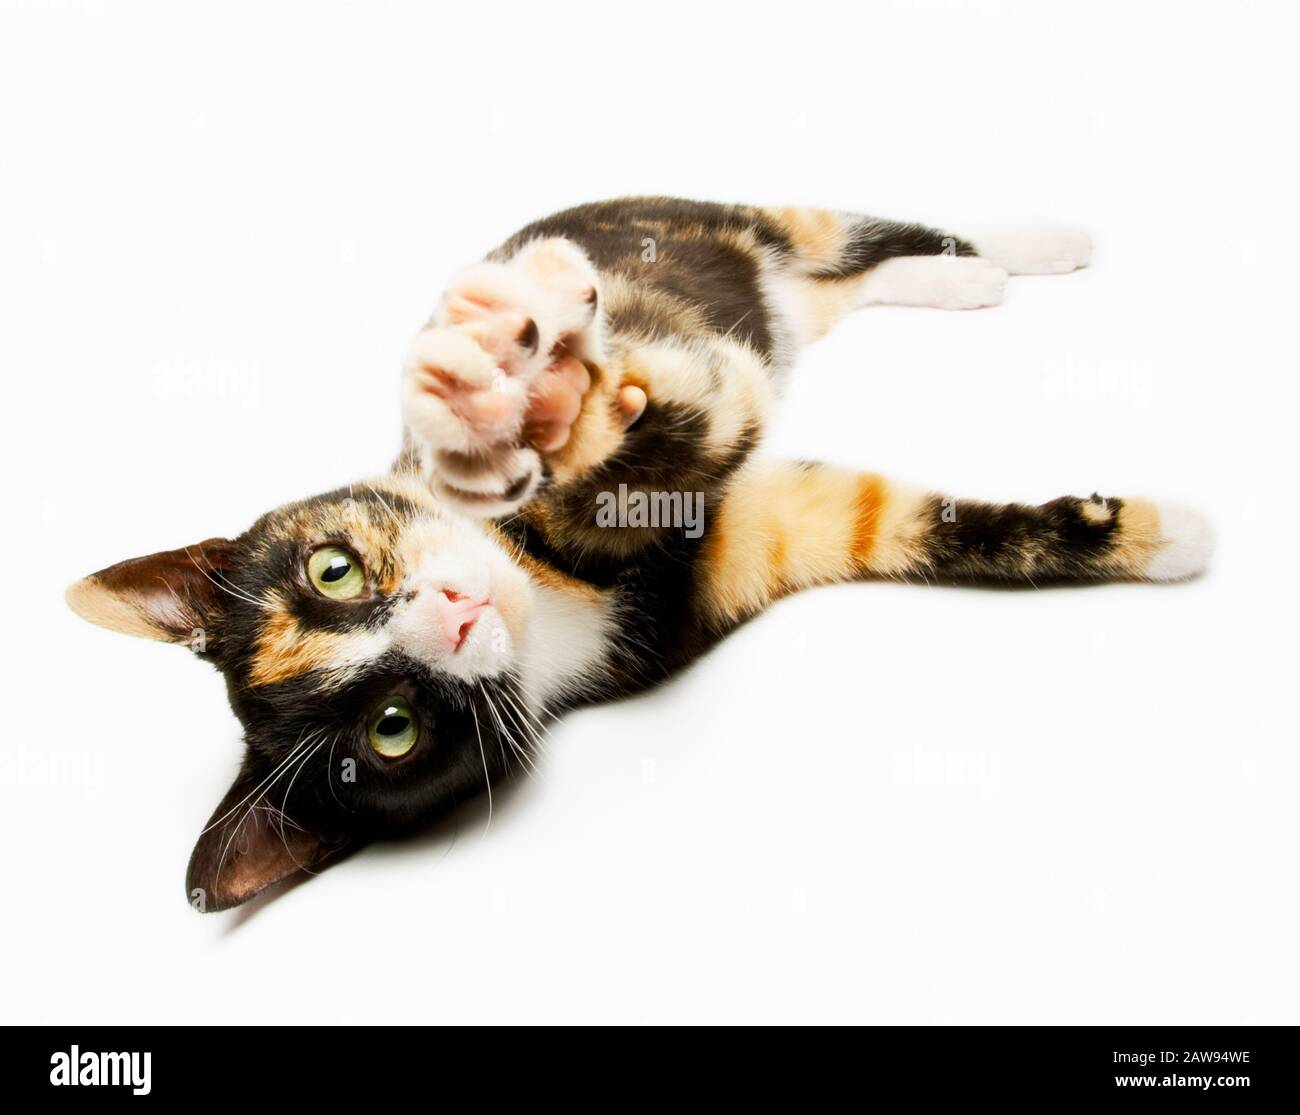 Mignonne jeune chaton tortoiseshell allongé sur son côté et étirant une patte vers l'appareil photo Banque D'Images